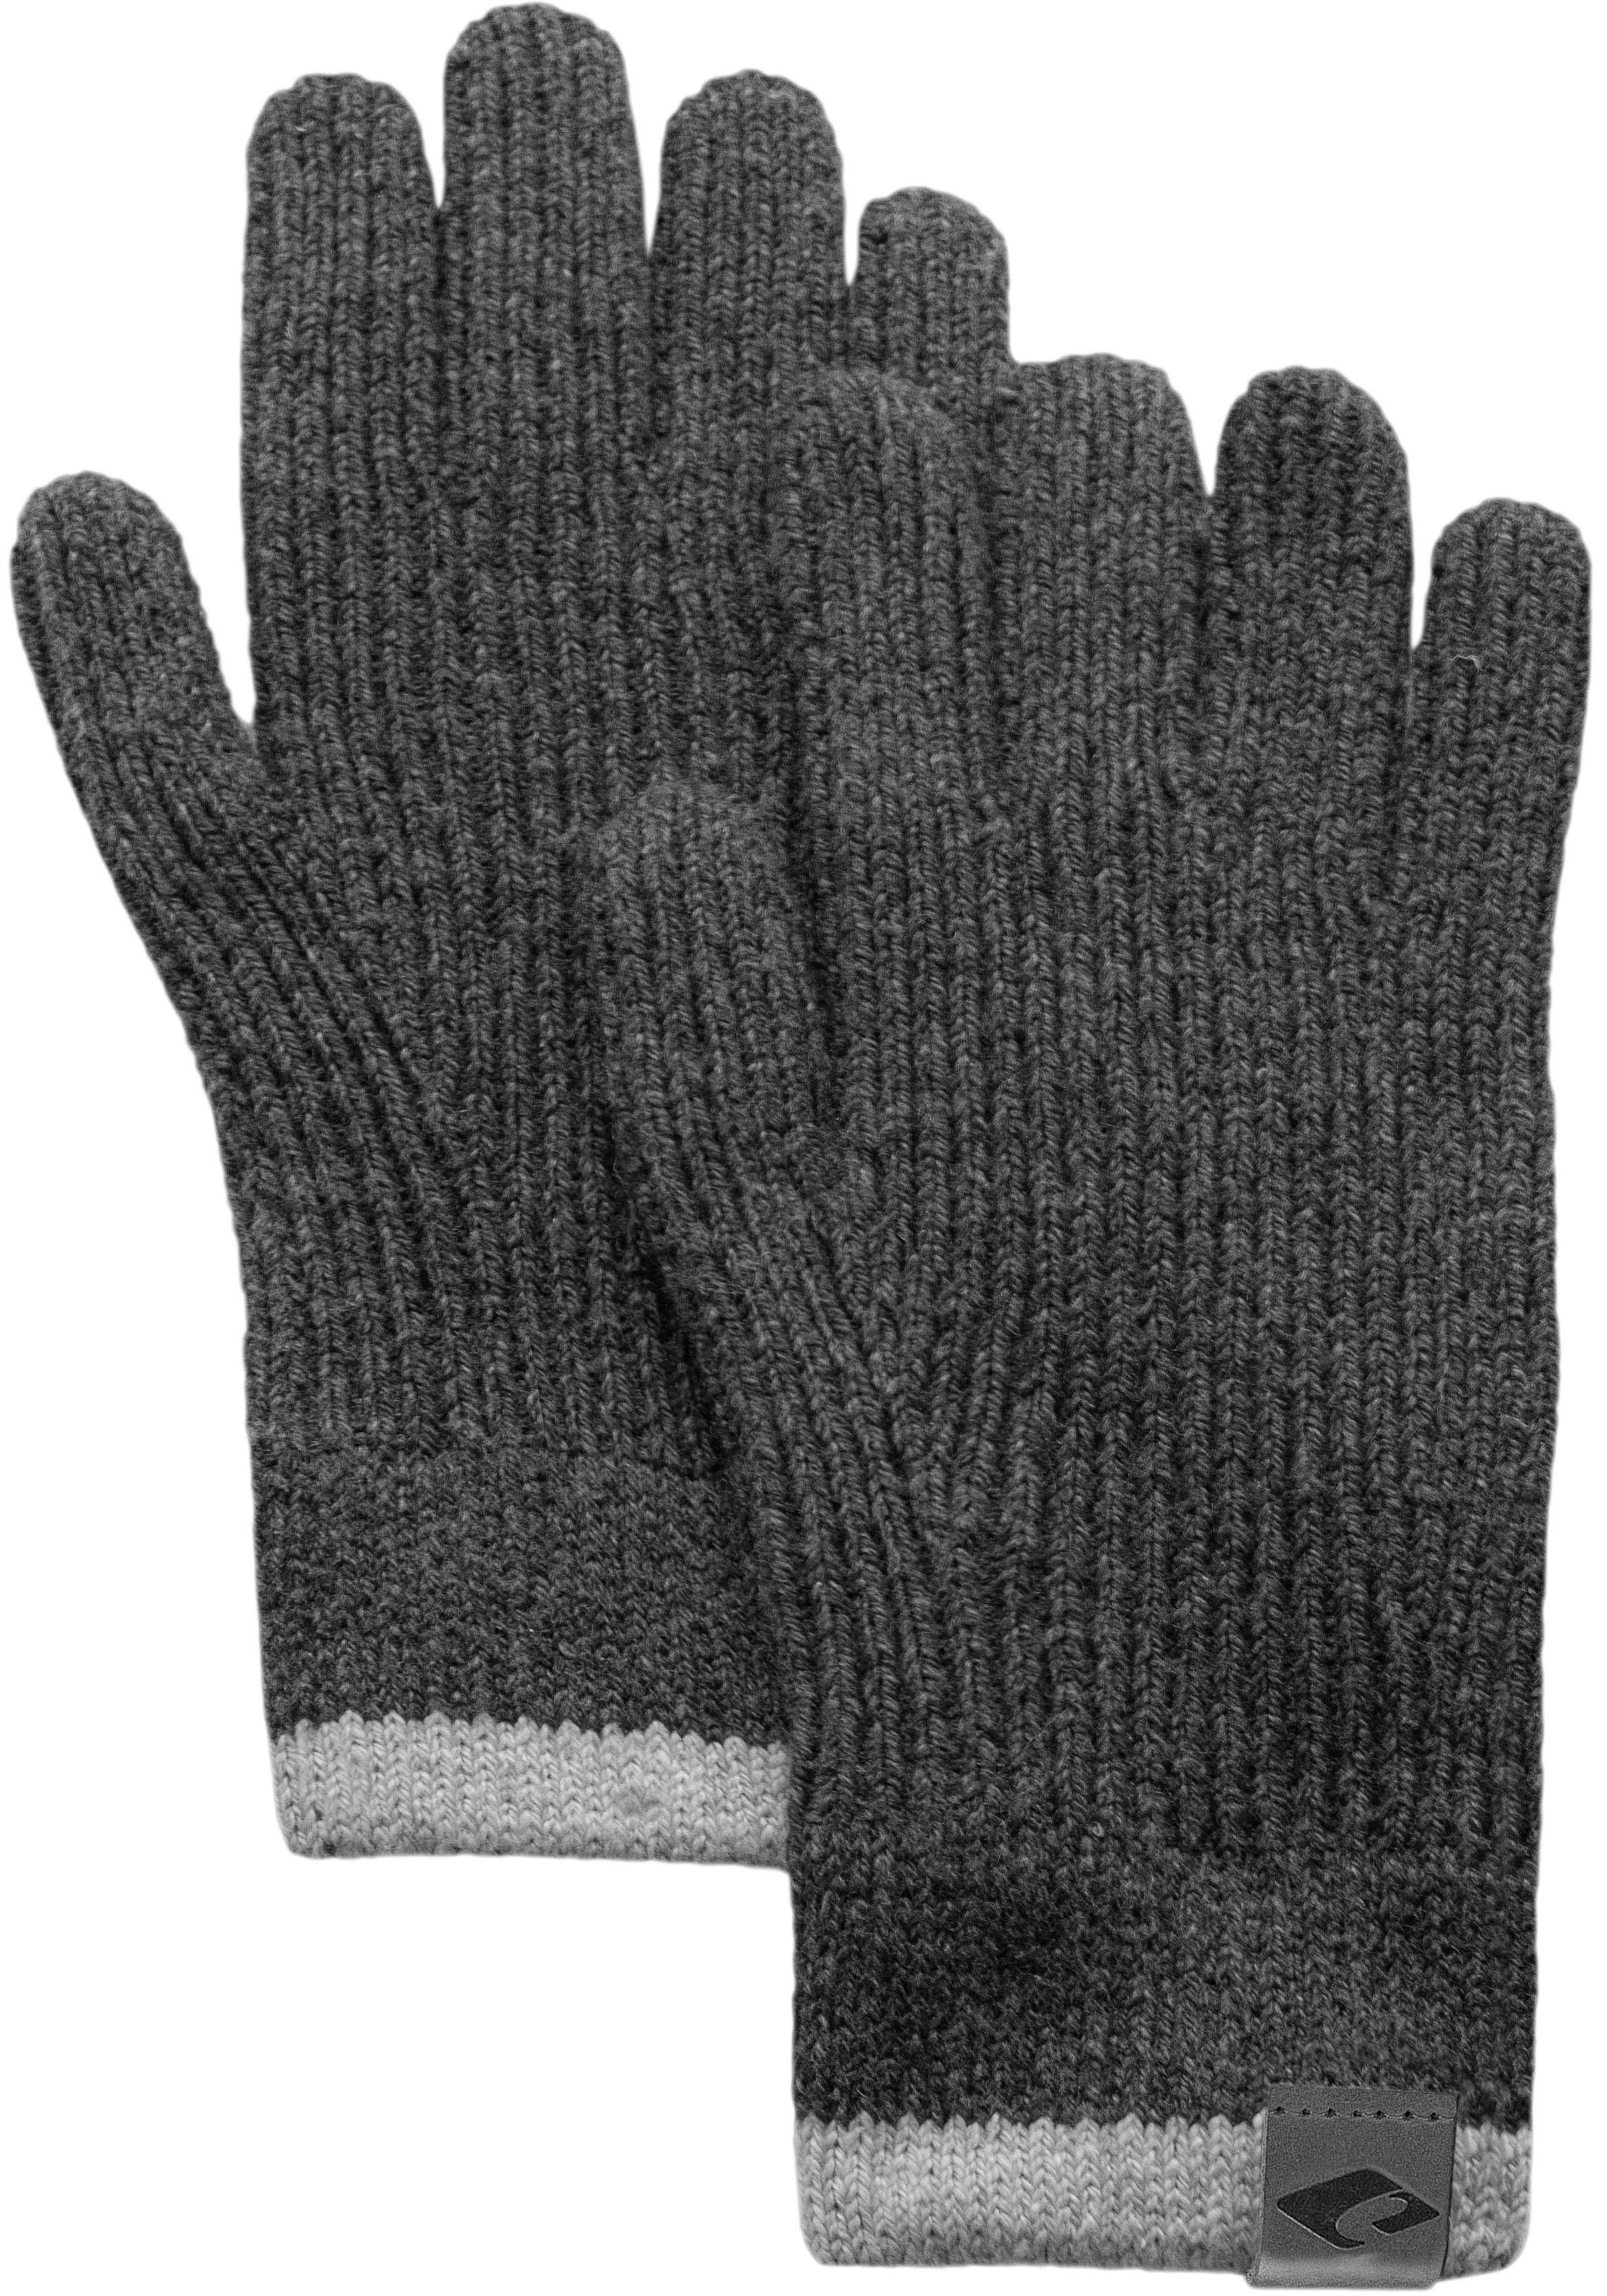 Merinowoll Handschuhe für Damen kaufen » Merino Handschuhe